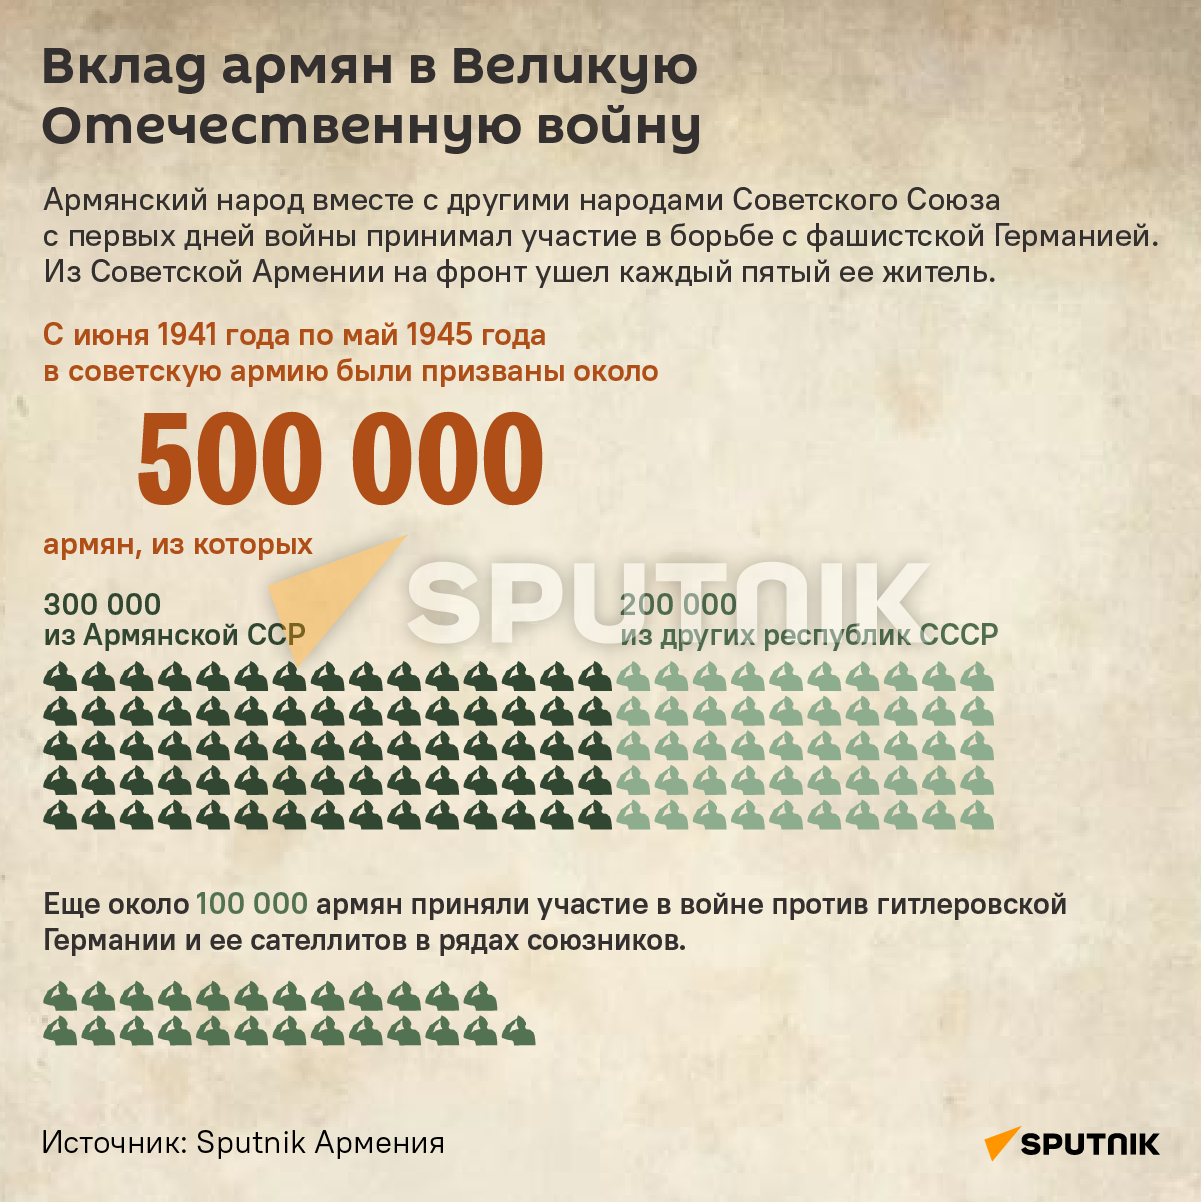 Вклад армян в Великую Отечественную войну - Sputnik Армения